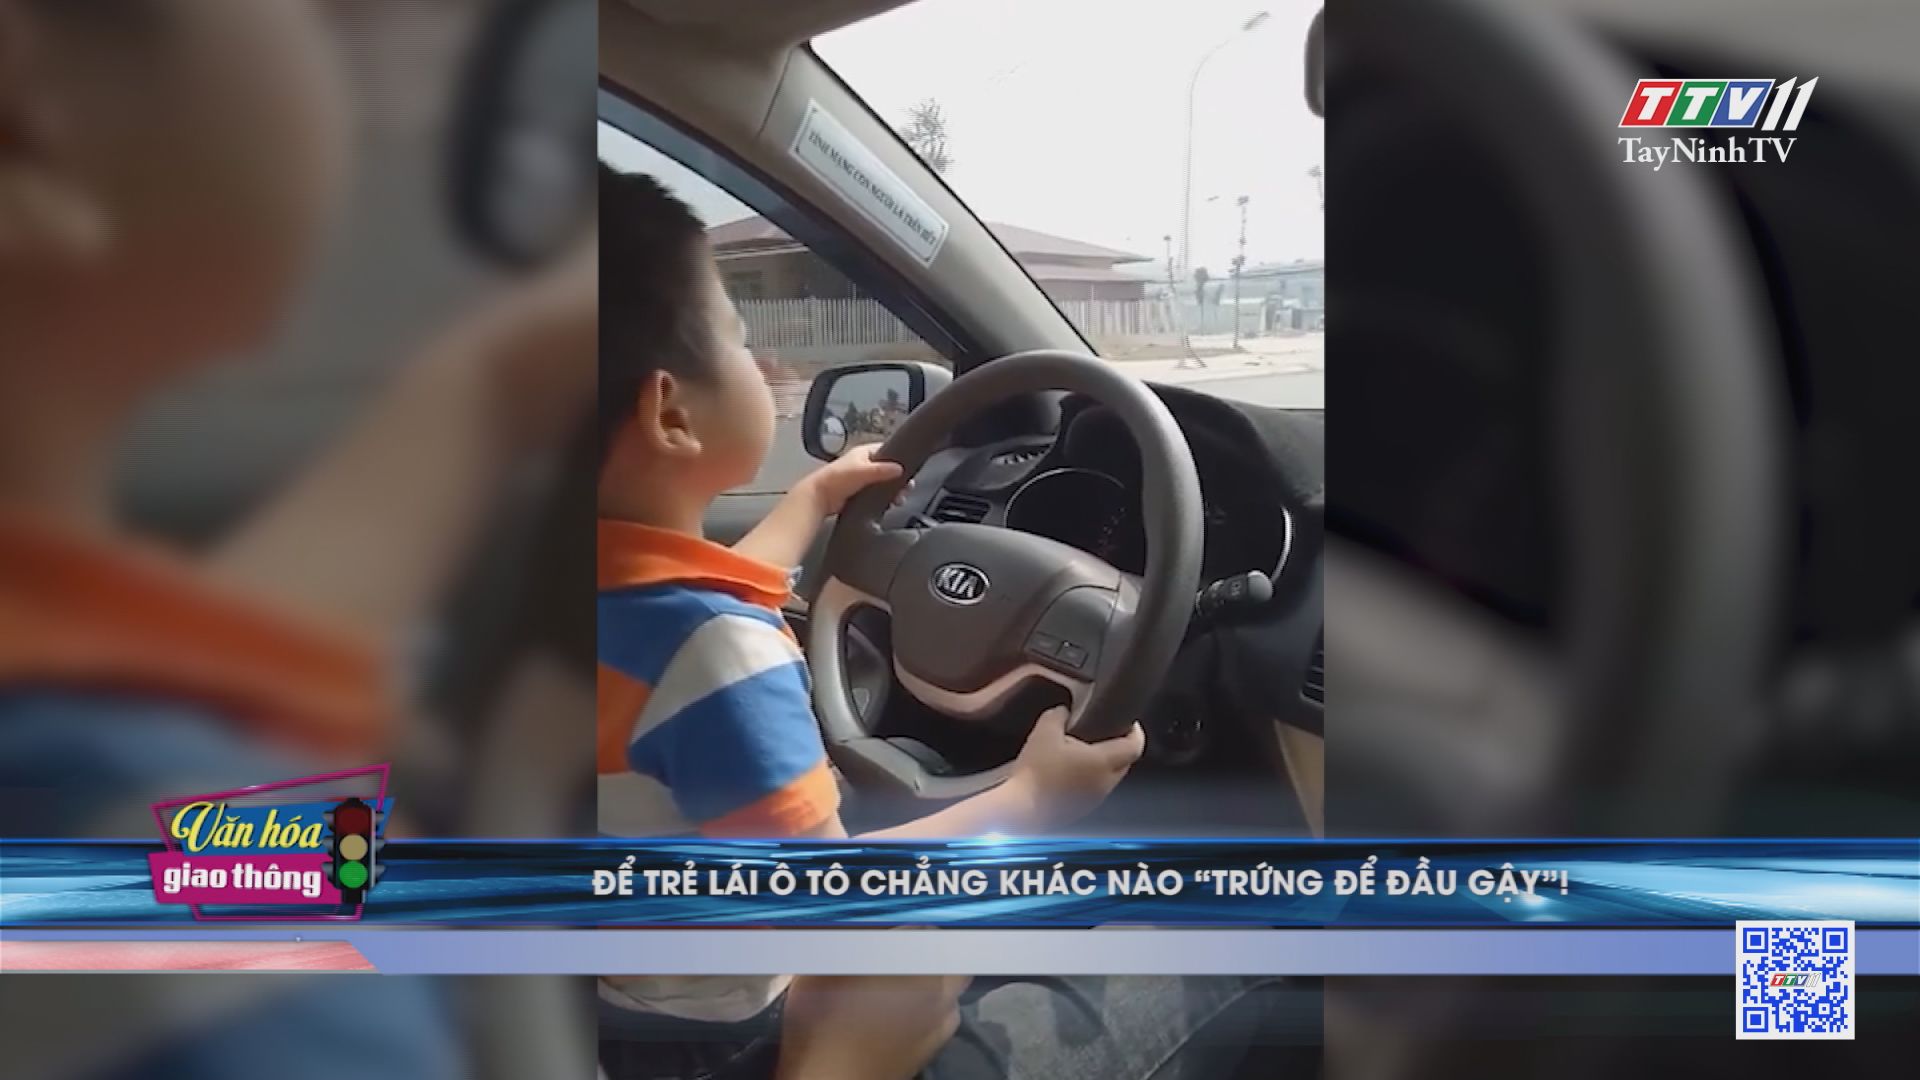 Để trẻ lái ô tô chẳng khác nào trứng để đầu gậy | Văn hóa giao thông | TayNinhTV